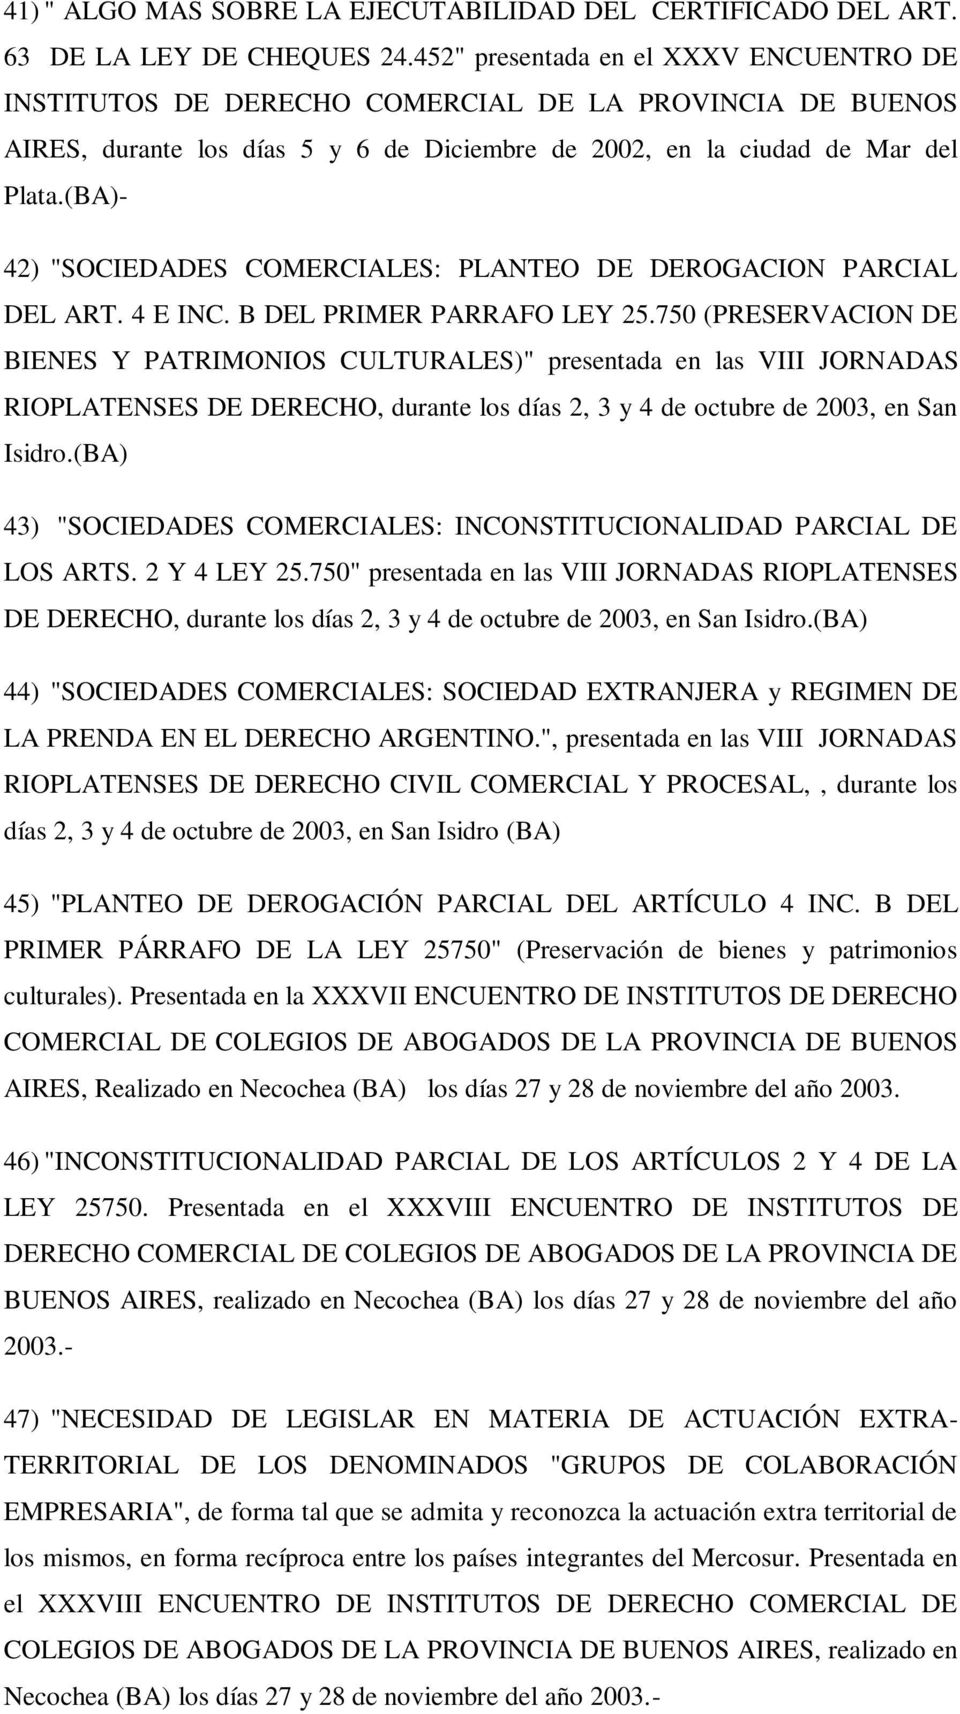 (BA)- 42) "SOCIEDADES COMERCIALES: PLANTEO DE DEROGACION PARCIAL DEL ART. 4 E INC. B DEL PRIMER PARRAFO LEY 25.